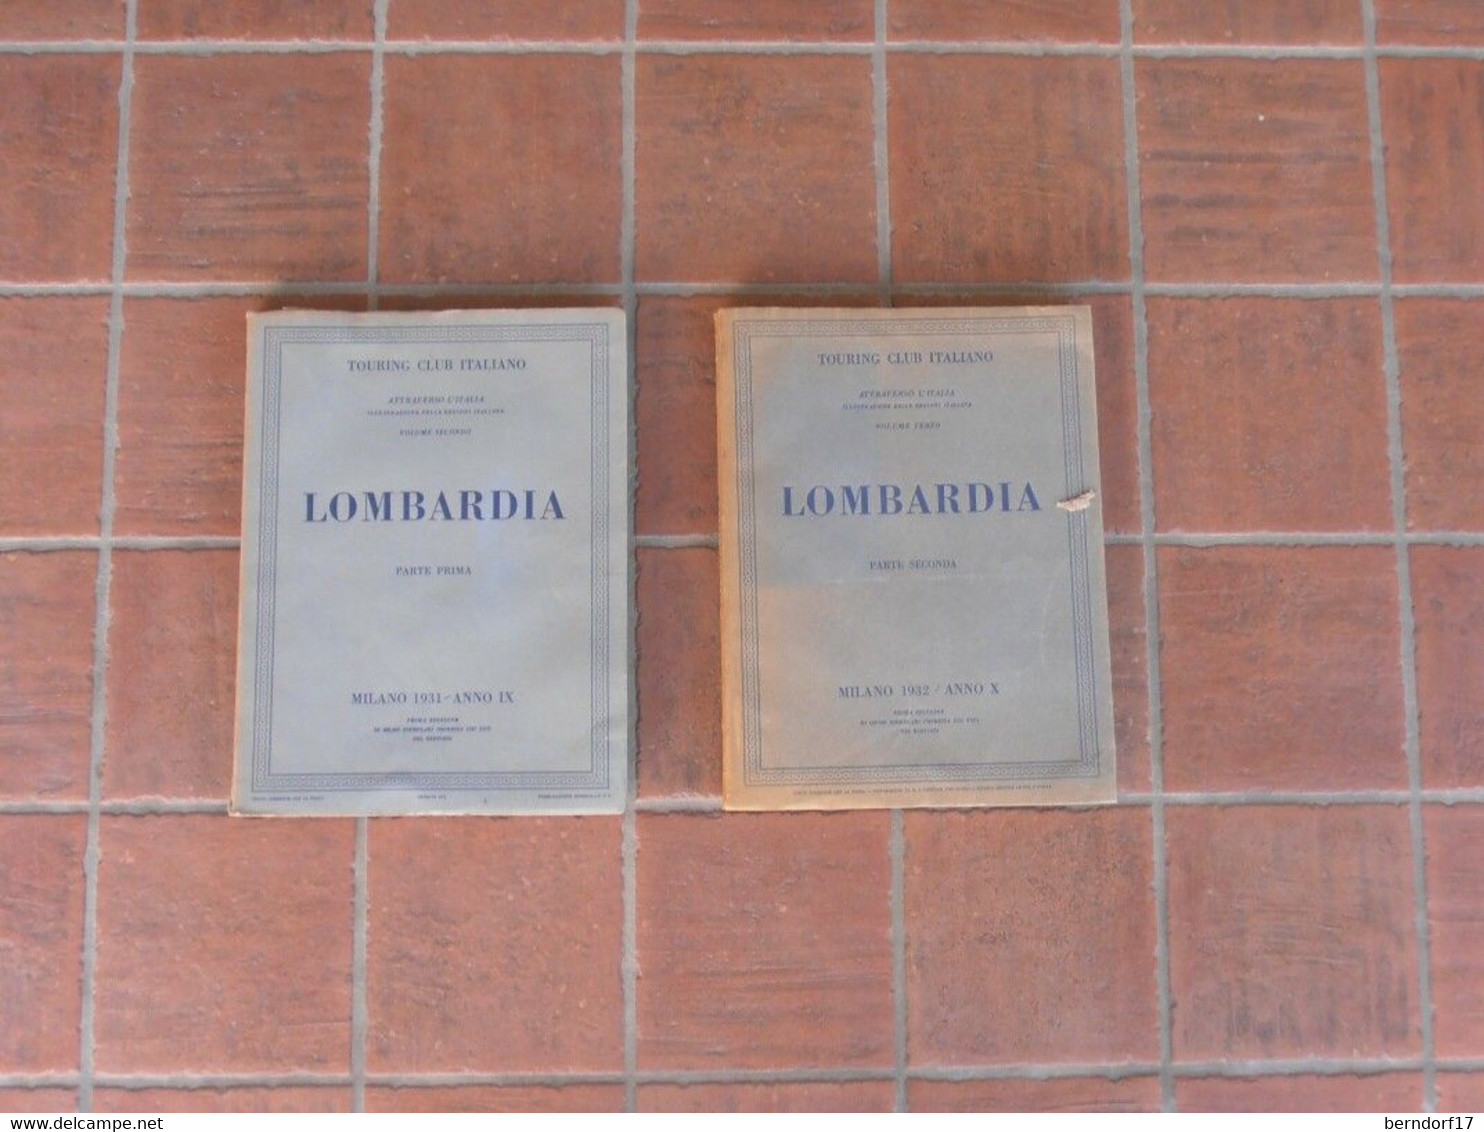 LOMBARDIA - Touring Club Italiano - Vol. 1 E 2 - Fotografia